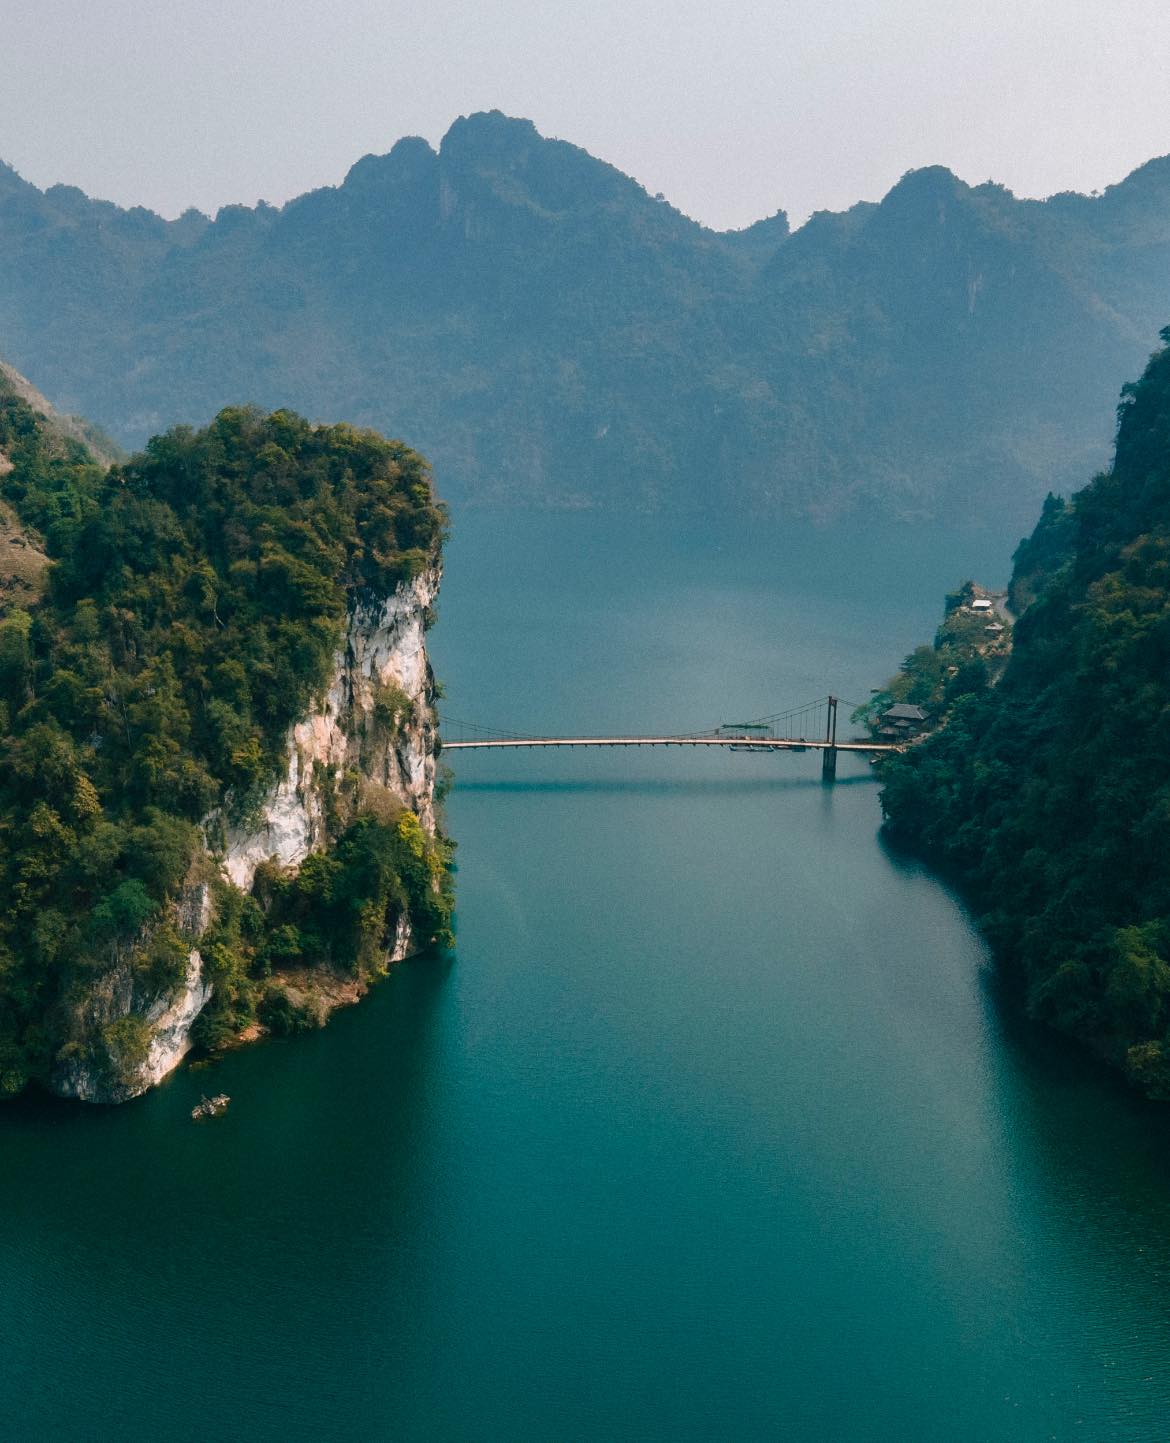 Phát hiện cây cầu treo đẹp như tranh vẽ giữa núi rừng Điện Biên, nhiều người không ngờ đây là khung cảnh tại Việt Nam- Ảnh 5.